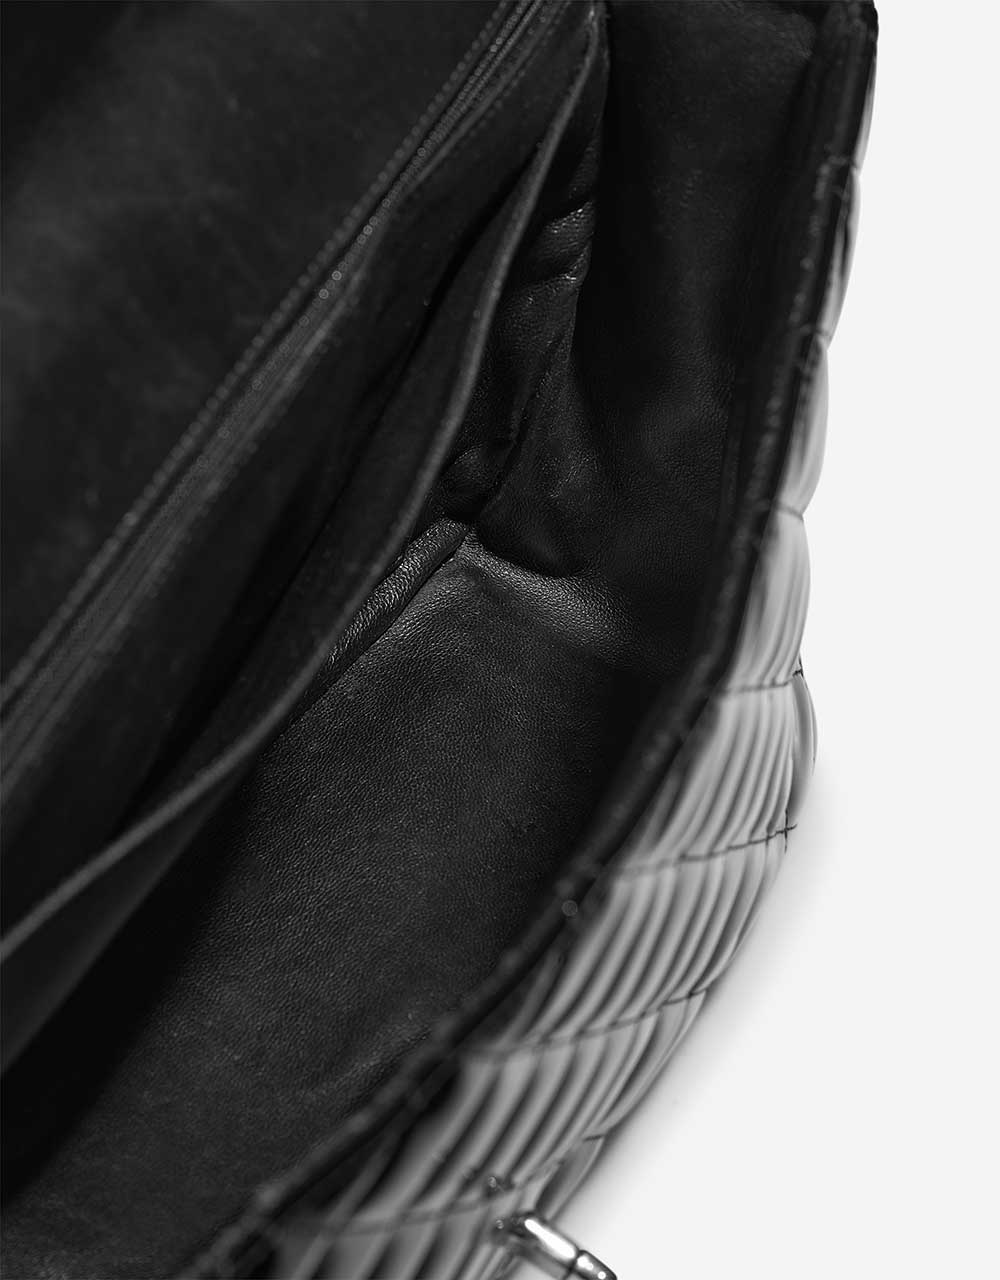 Chanel Timeless Maxi Black Inside | Verkaufen Sie Ihre Designer-Tasche auf Saclab.com